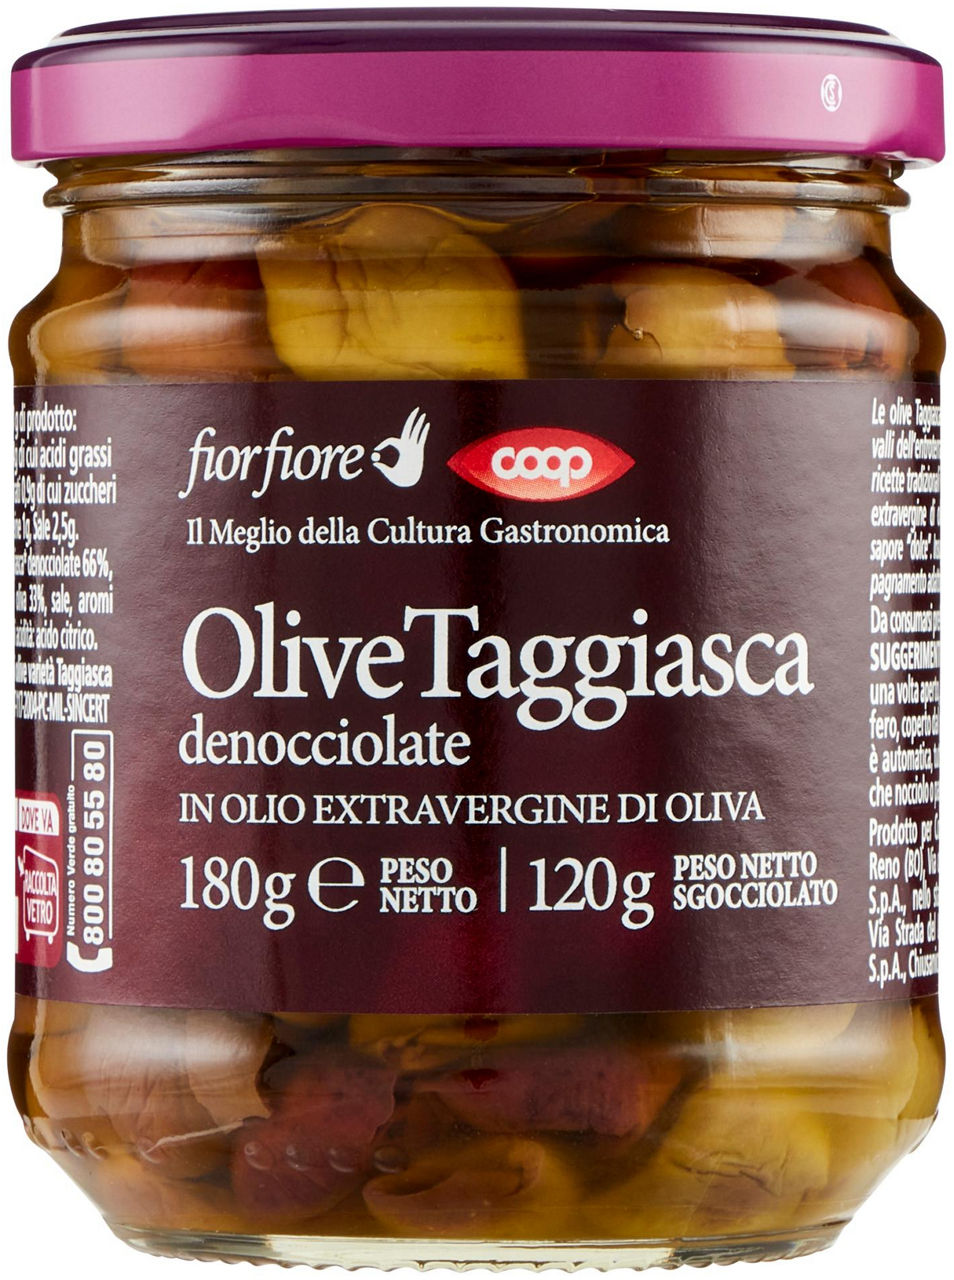 Olive taggiasche denocciolate coop fior fiore in olio exv vv gr. 180